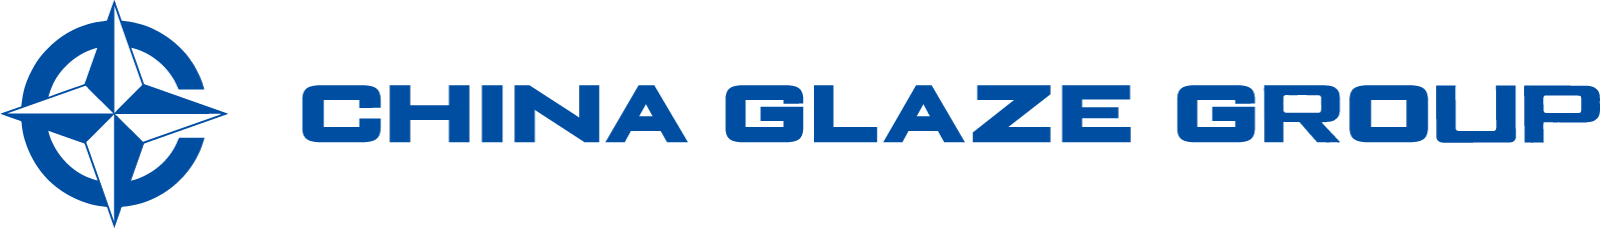 企業情報ページ｜台湾本社企業のChina Glaze Co., Ltdは台湾で最初のセラミックスフリット釉薬メーカーとして1974年に設立。BtoB向けに高品質なガラス粉末やガラスパウダーやセラミックスフリット釉薬を製造する台湾本社のChina Glaze Co., Ltd.（和名：チャイナグレーズ株式会社）は台湾株式市場一部に上場（企業番号1809）しています。